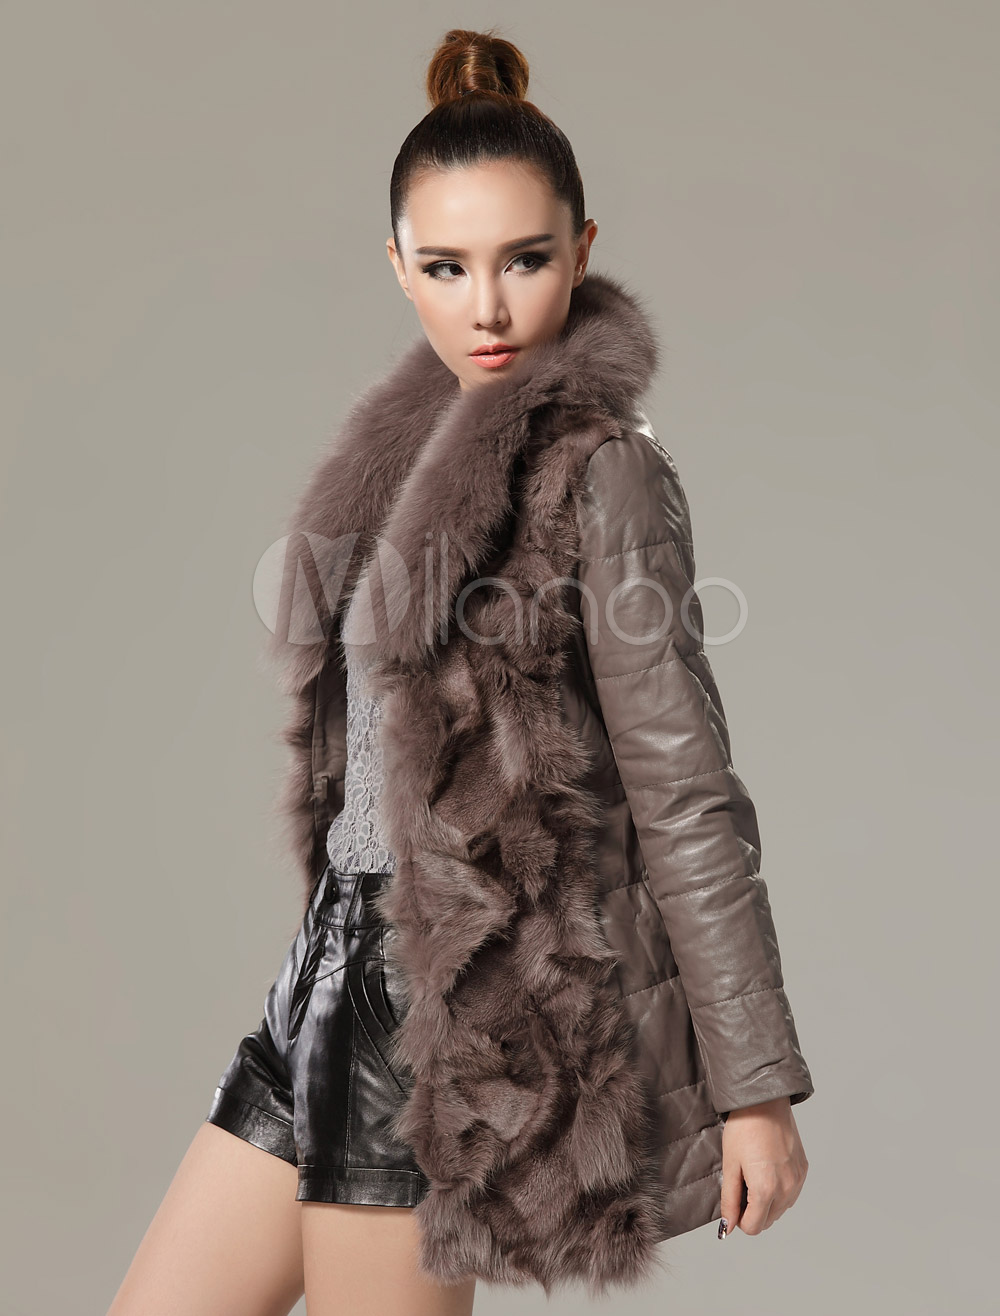 Solid Color Fur Elegant Fur Coat for Woman - Milanoo.com